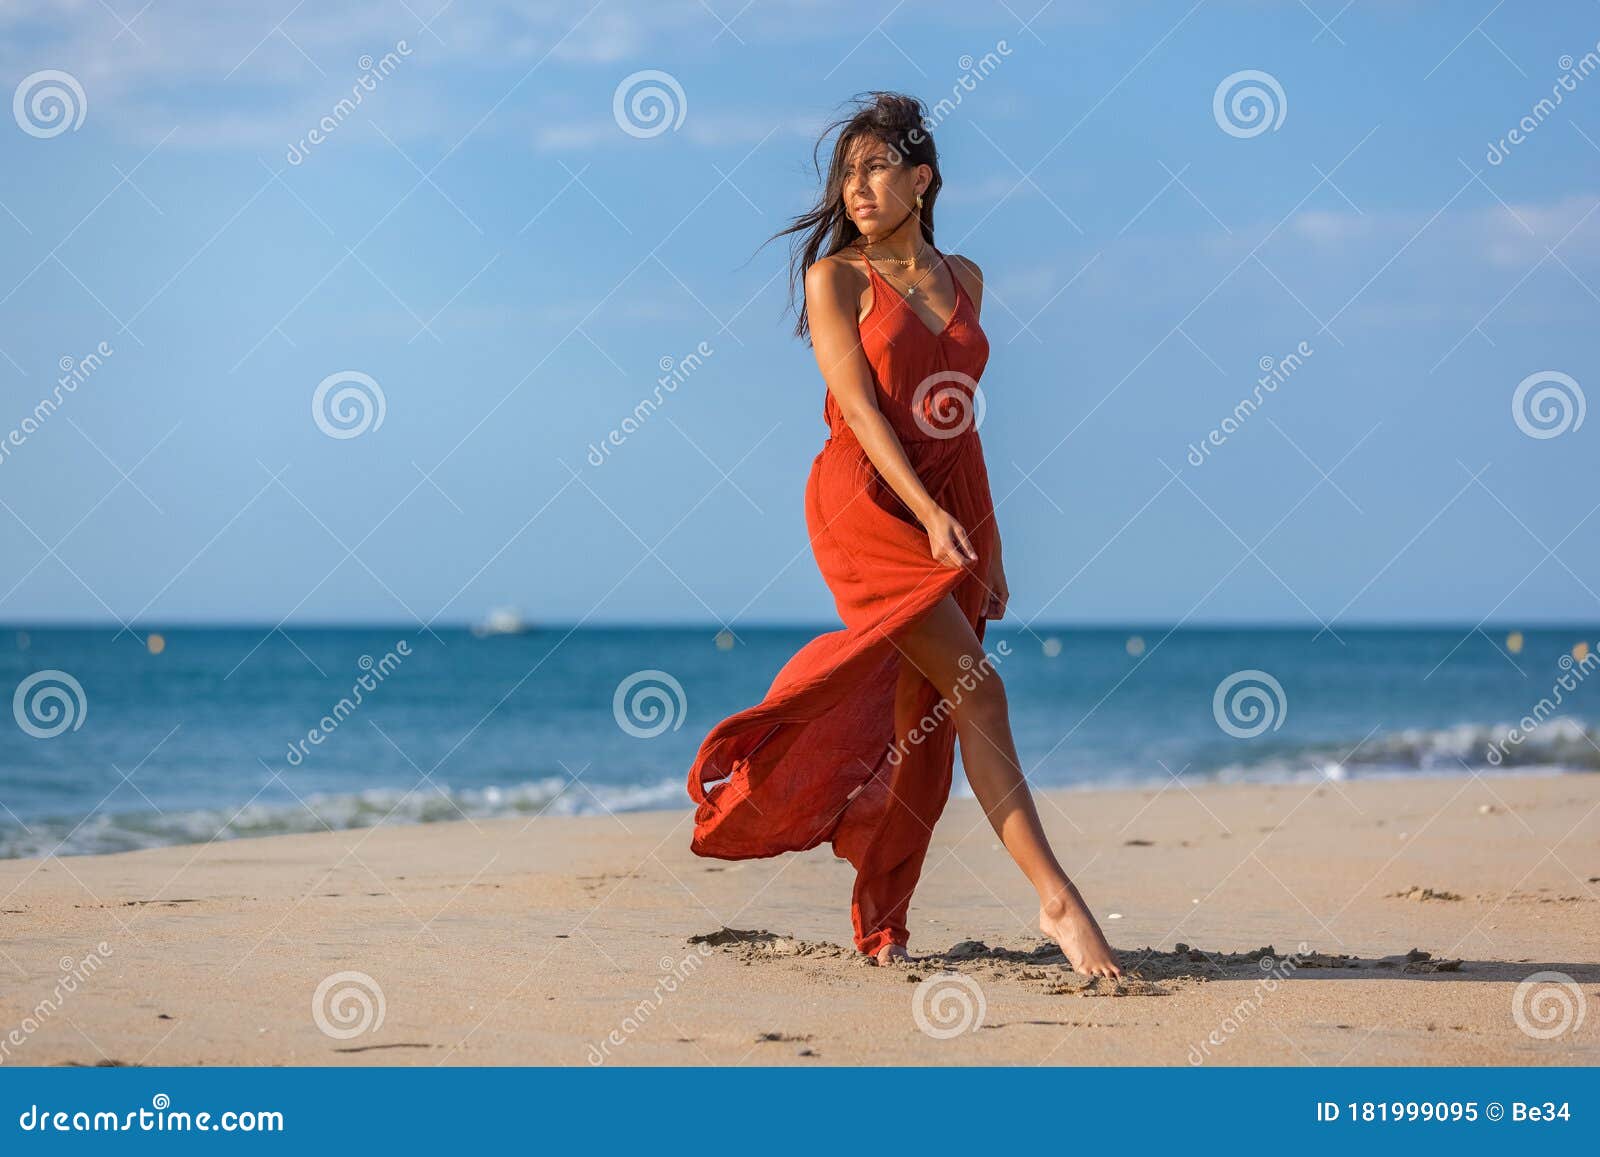 Nude Girl On Beach